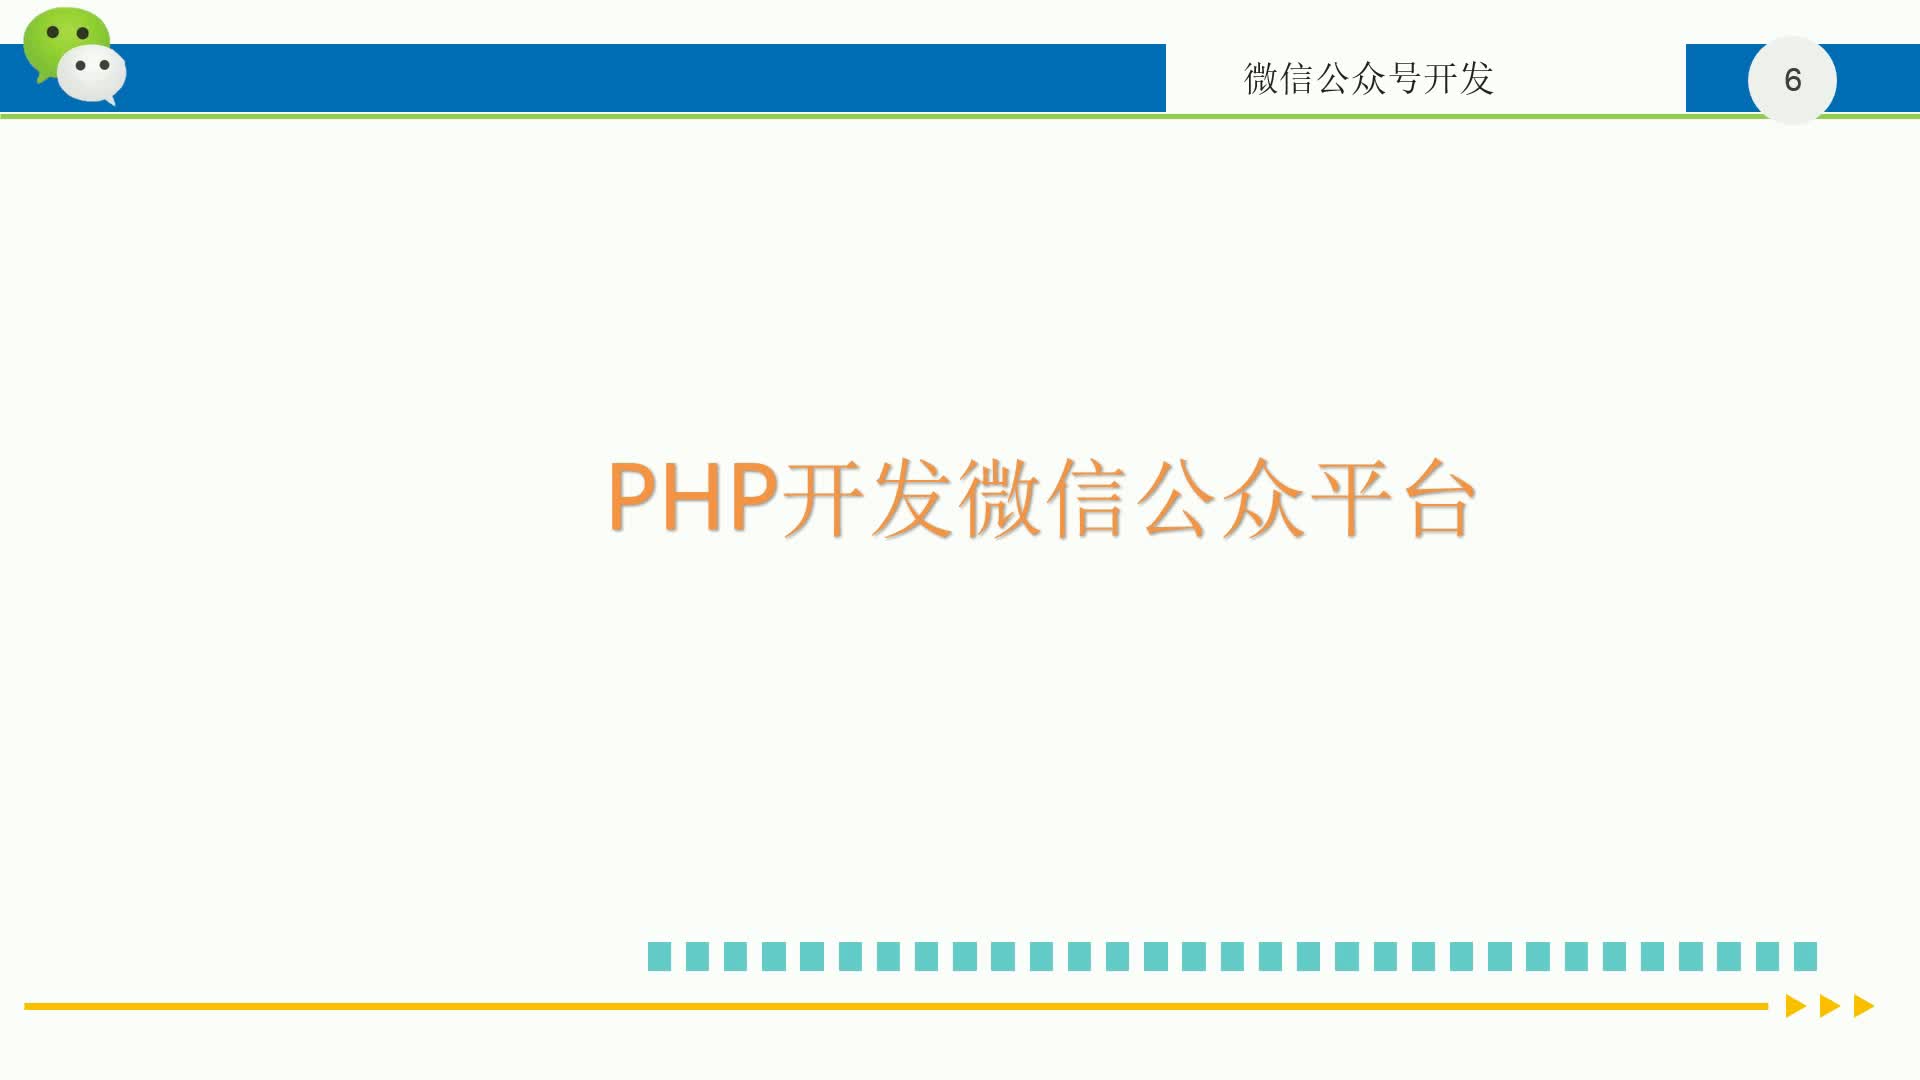 PHP开发微信公众平台——天气查询实战项目